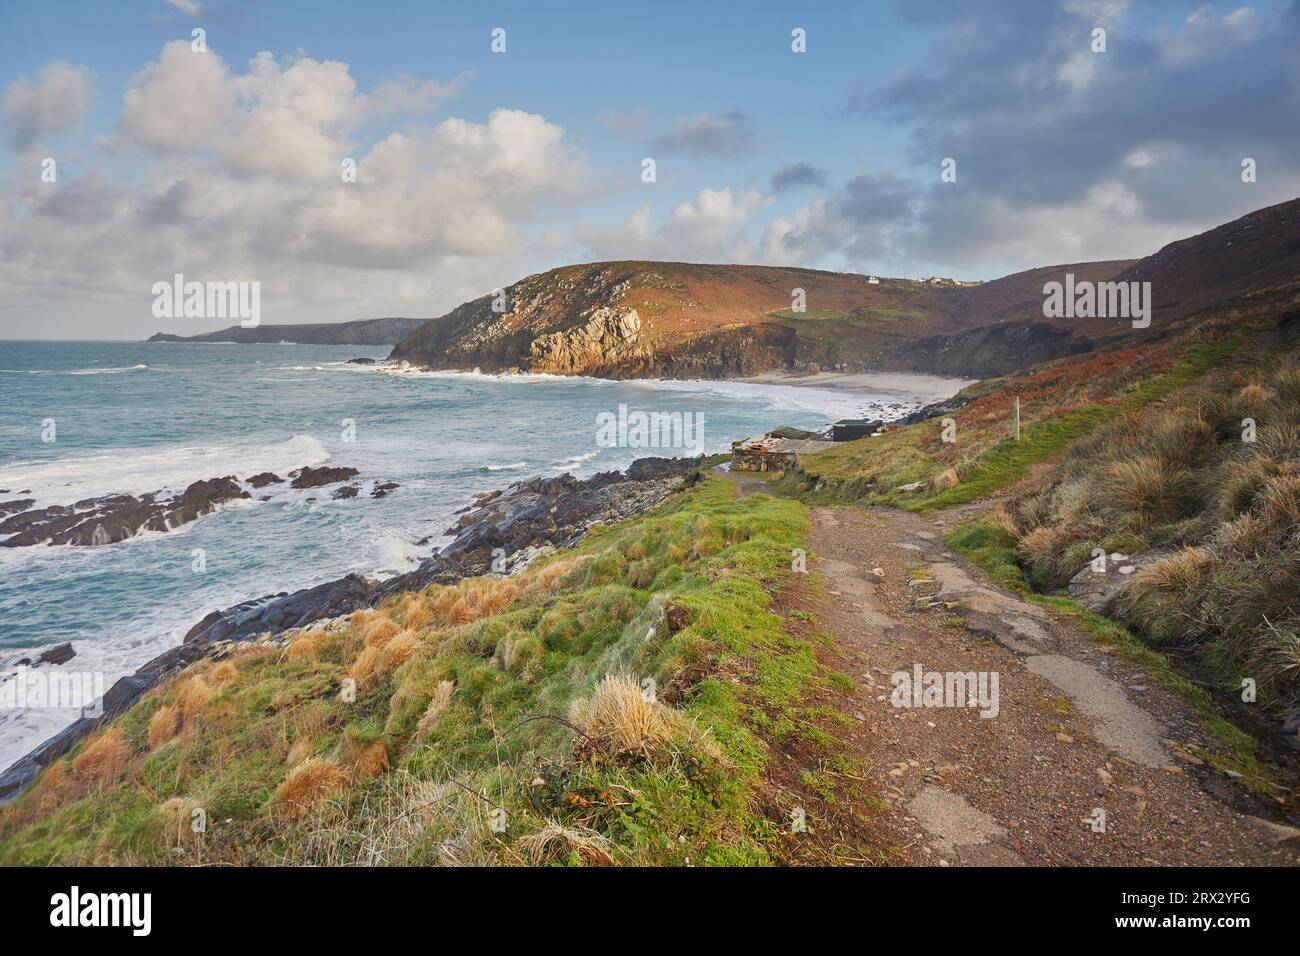 Les falaises et le sable de Portheras Cove, une plage éloignée près de Pendeen, sur les falaises abruptes de l'Atlantique à l'extrême ouest de Cornwall, en Angleterre Banque D'Images